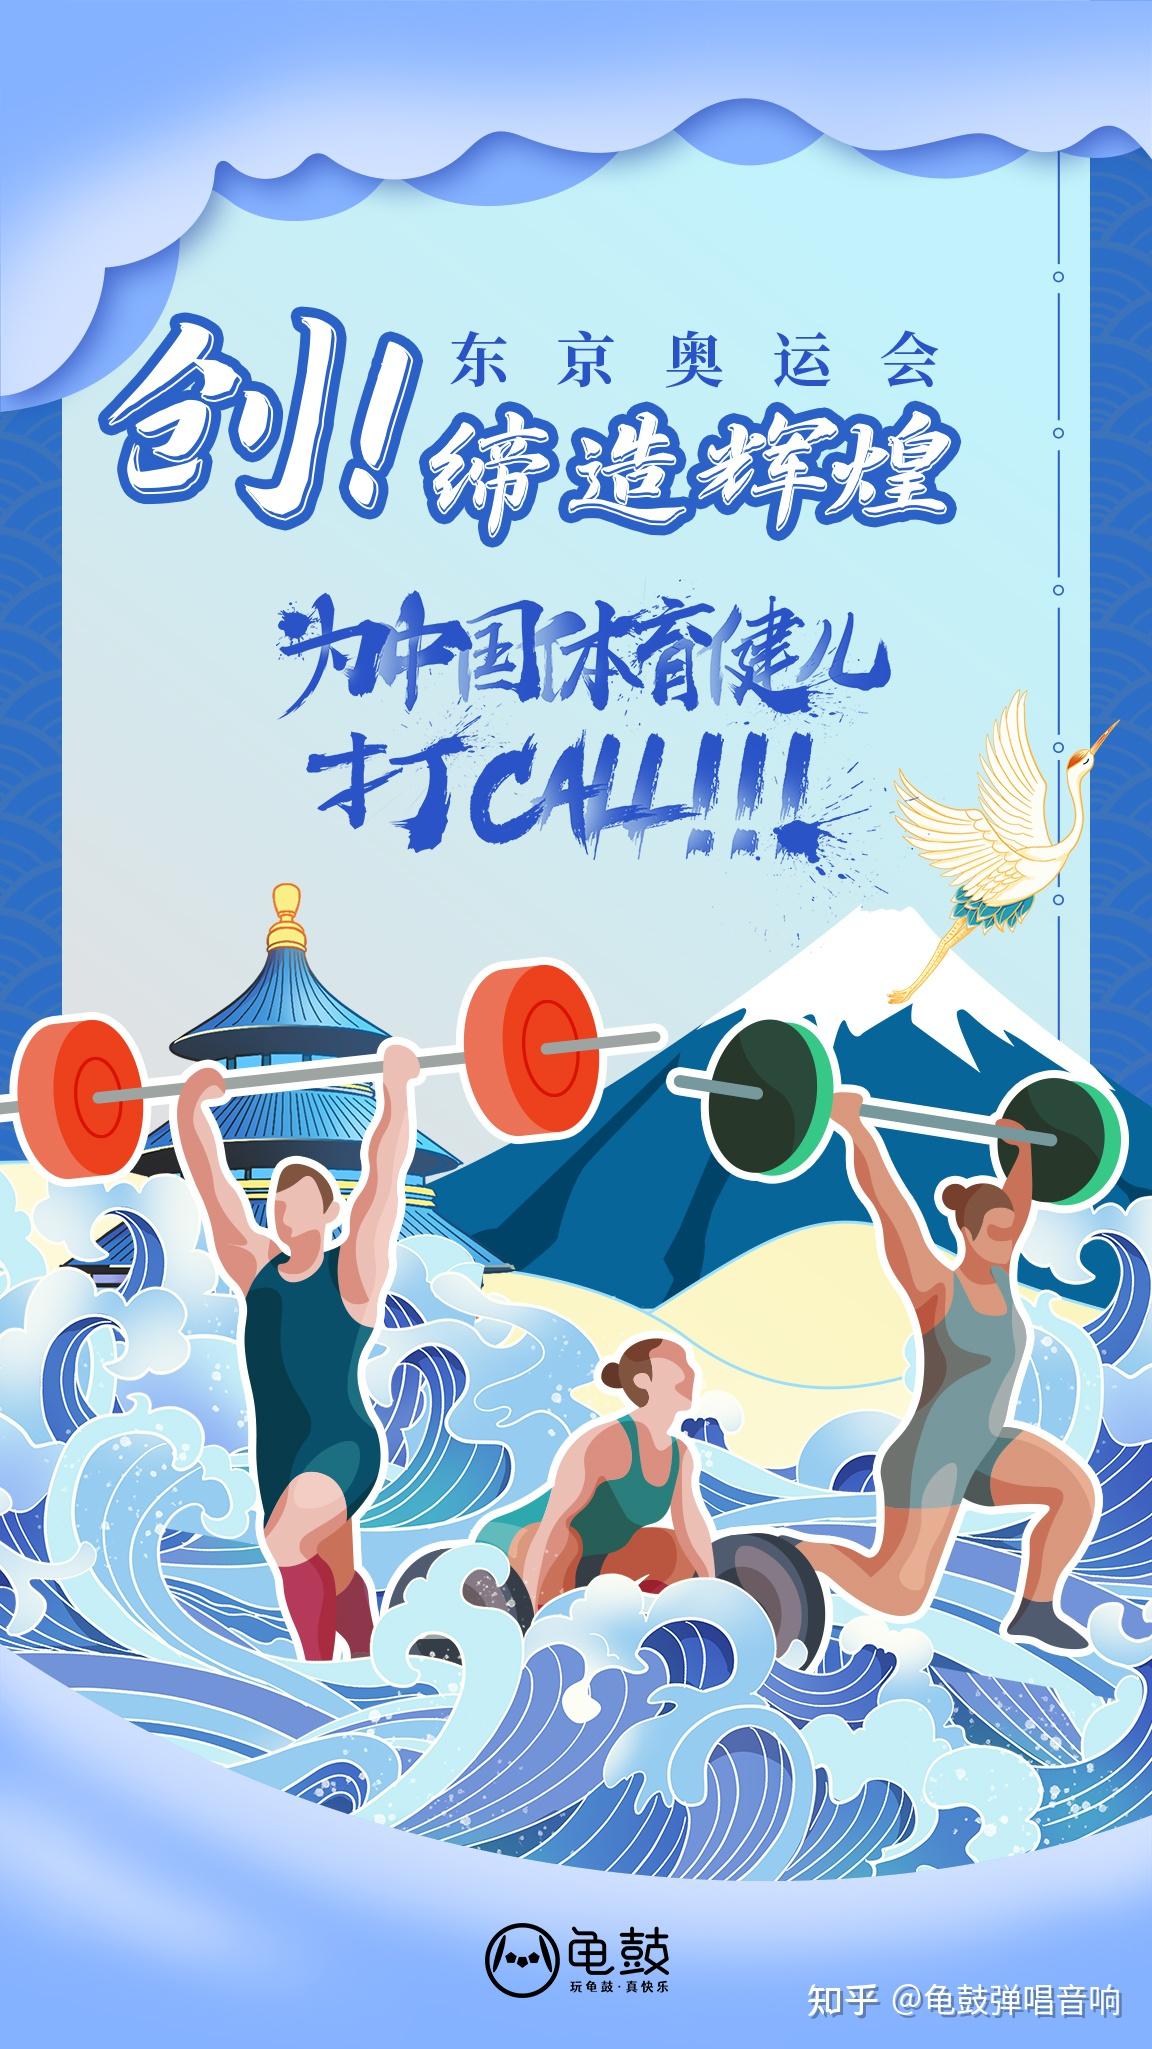 分享一组东京奥运新海报